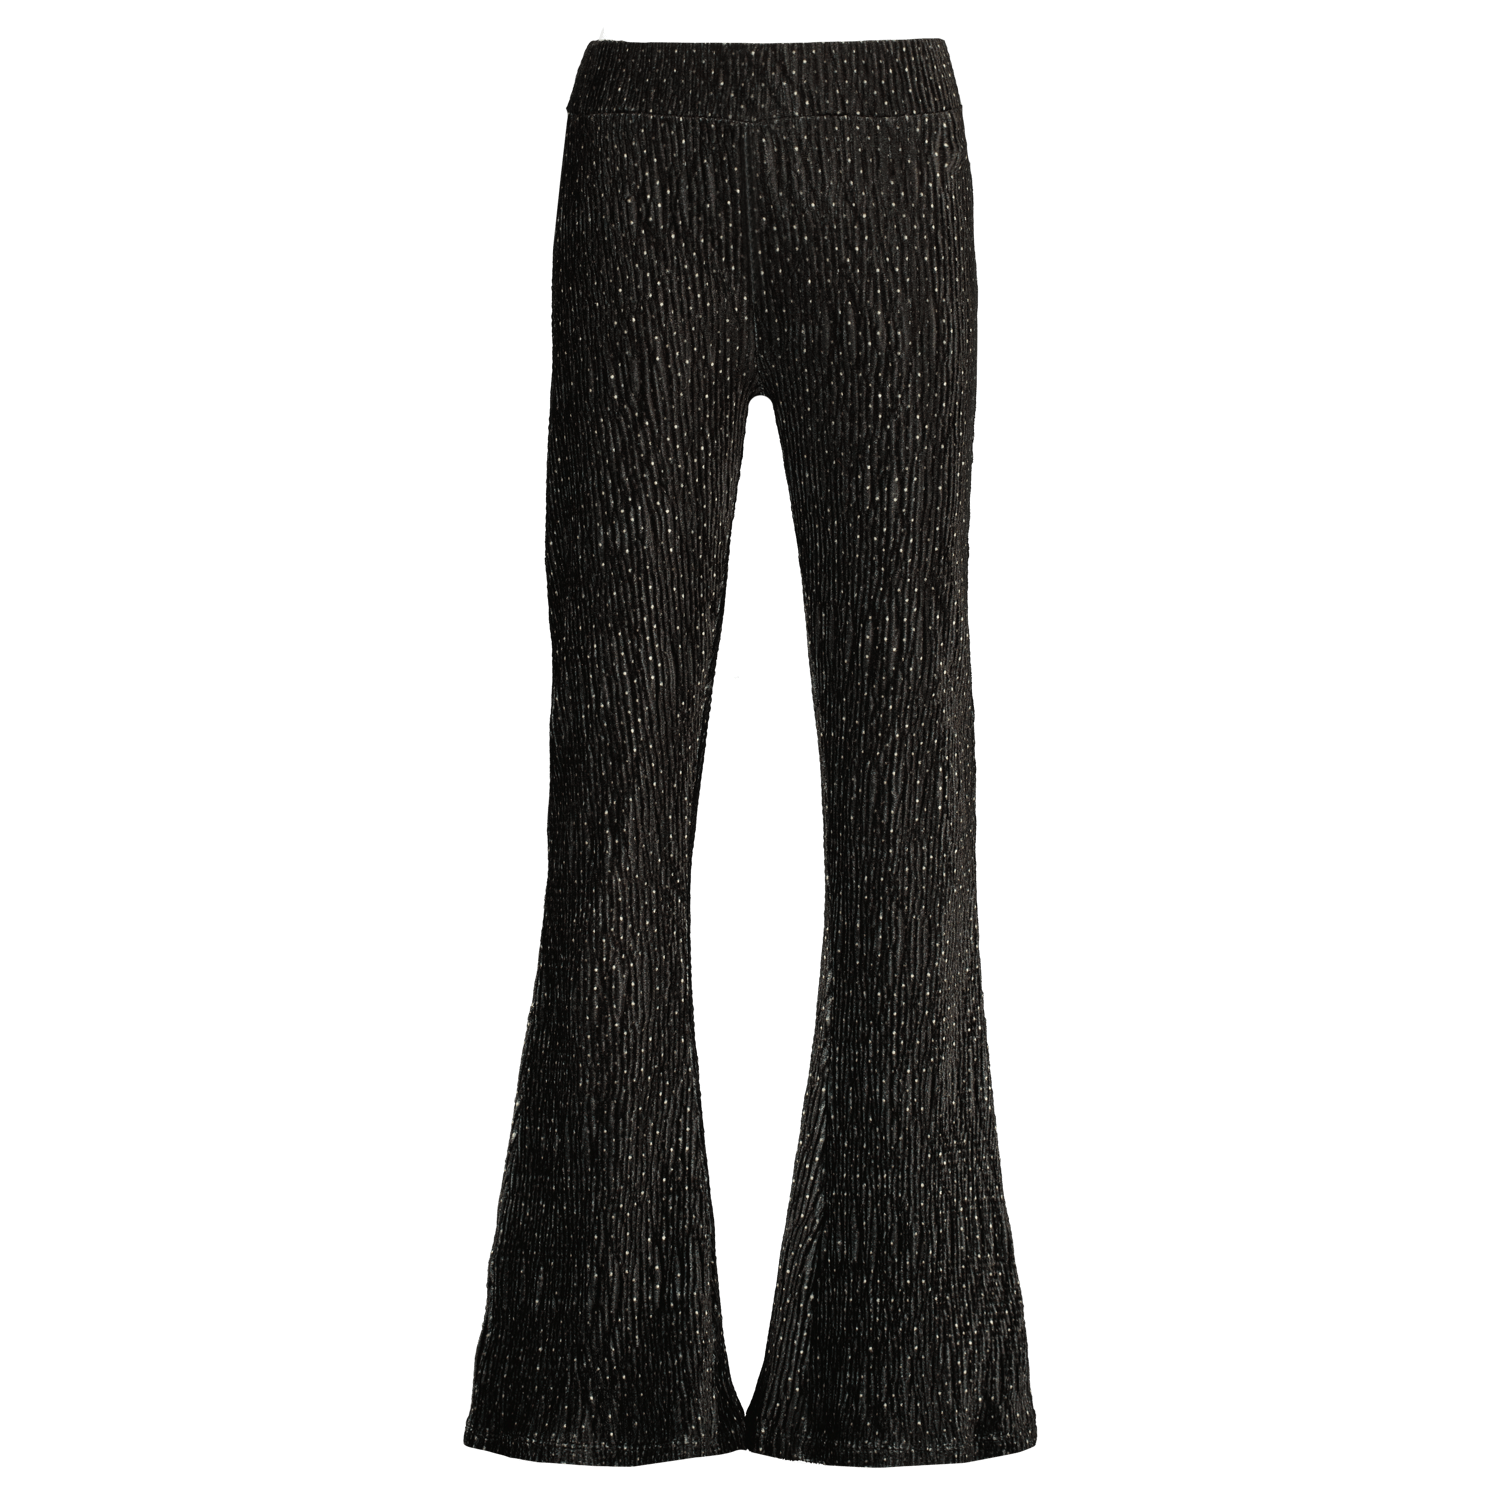 VINGINO high waist flared broek Sanna met glitters zwart goud Meisjes Polyester 140